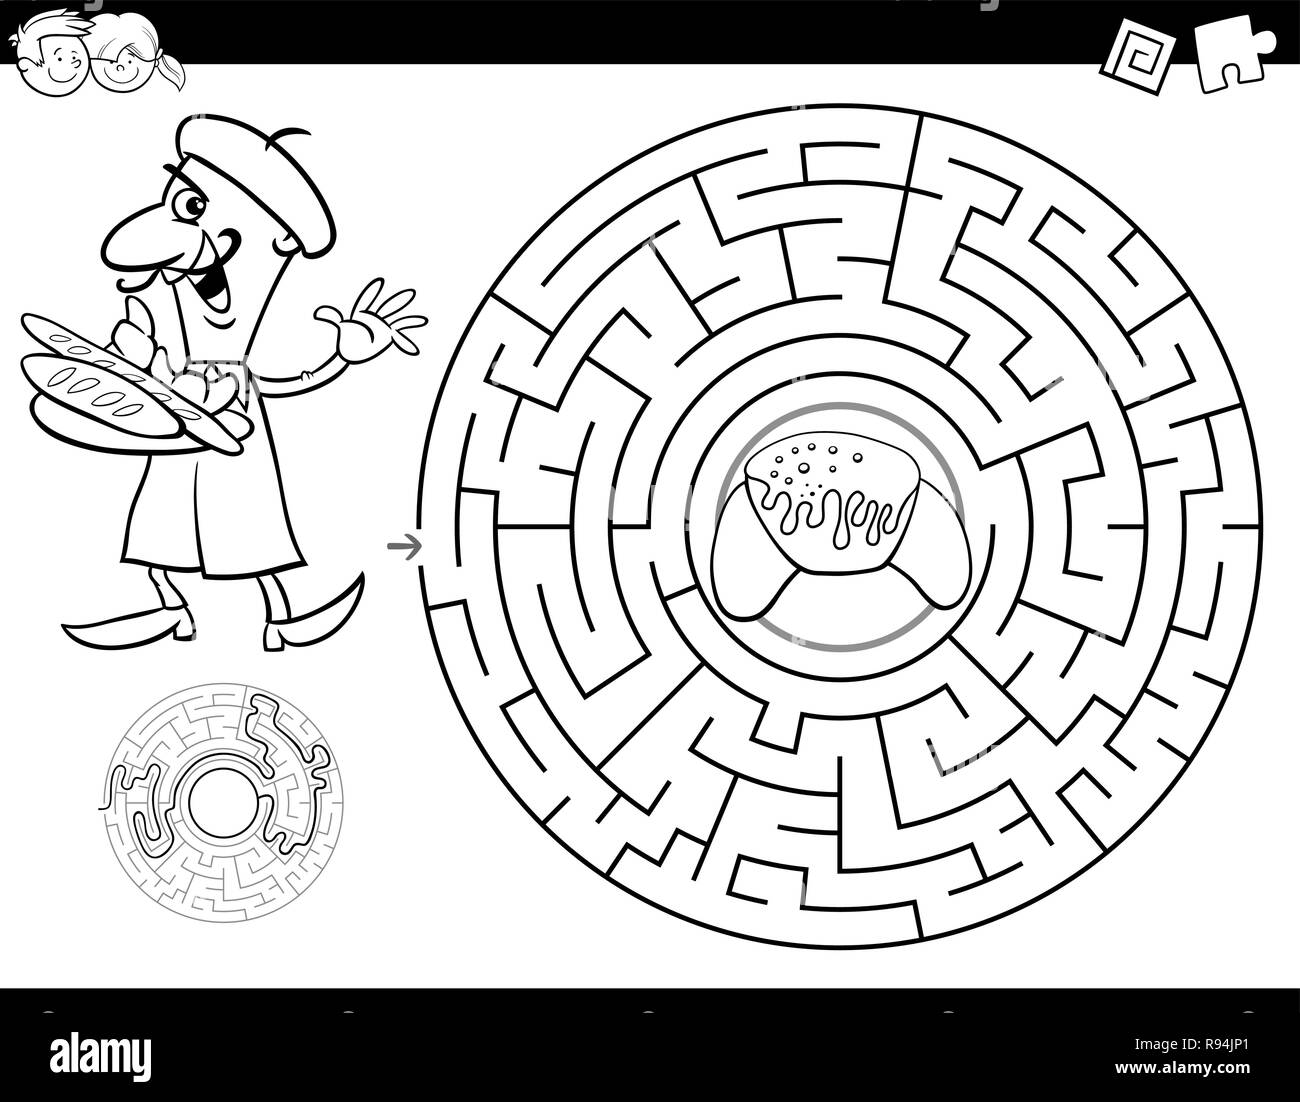 Schwarze und Weiße Cartoon Illustration für Bildung Labyrinth oder Irrgarten Aktivität Spiel für Kinder mit Bäcker und Croissant Malbuch Stock Vektor